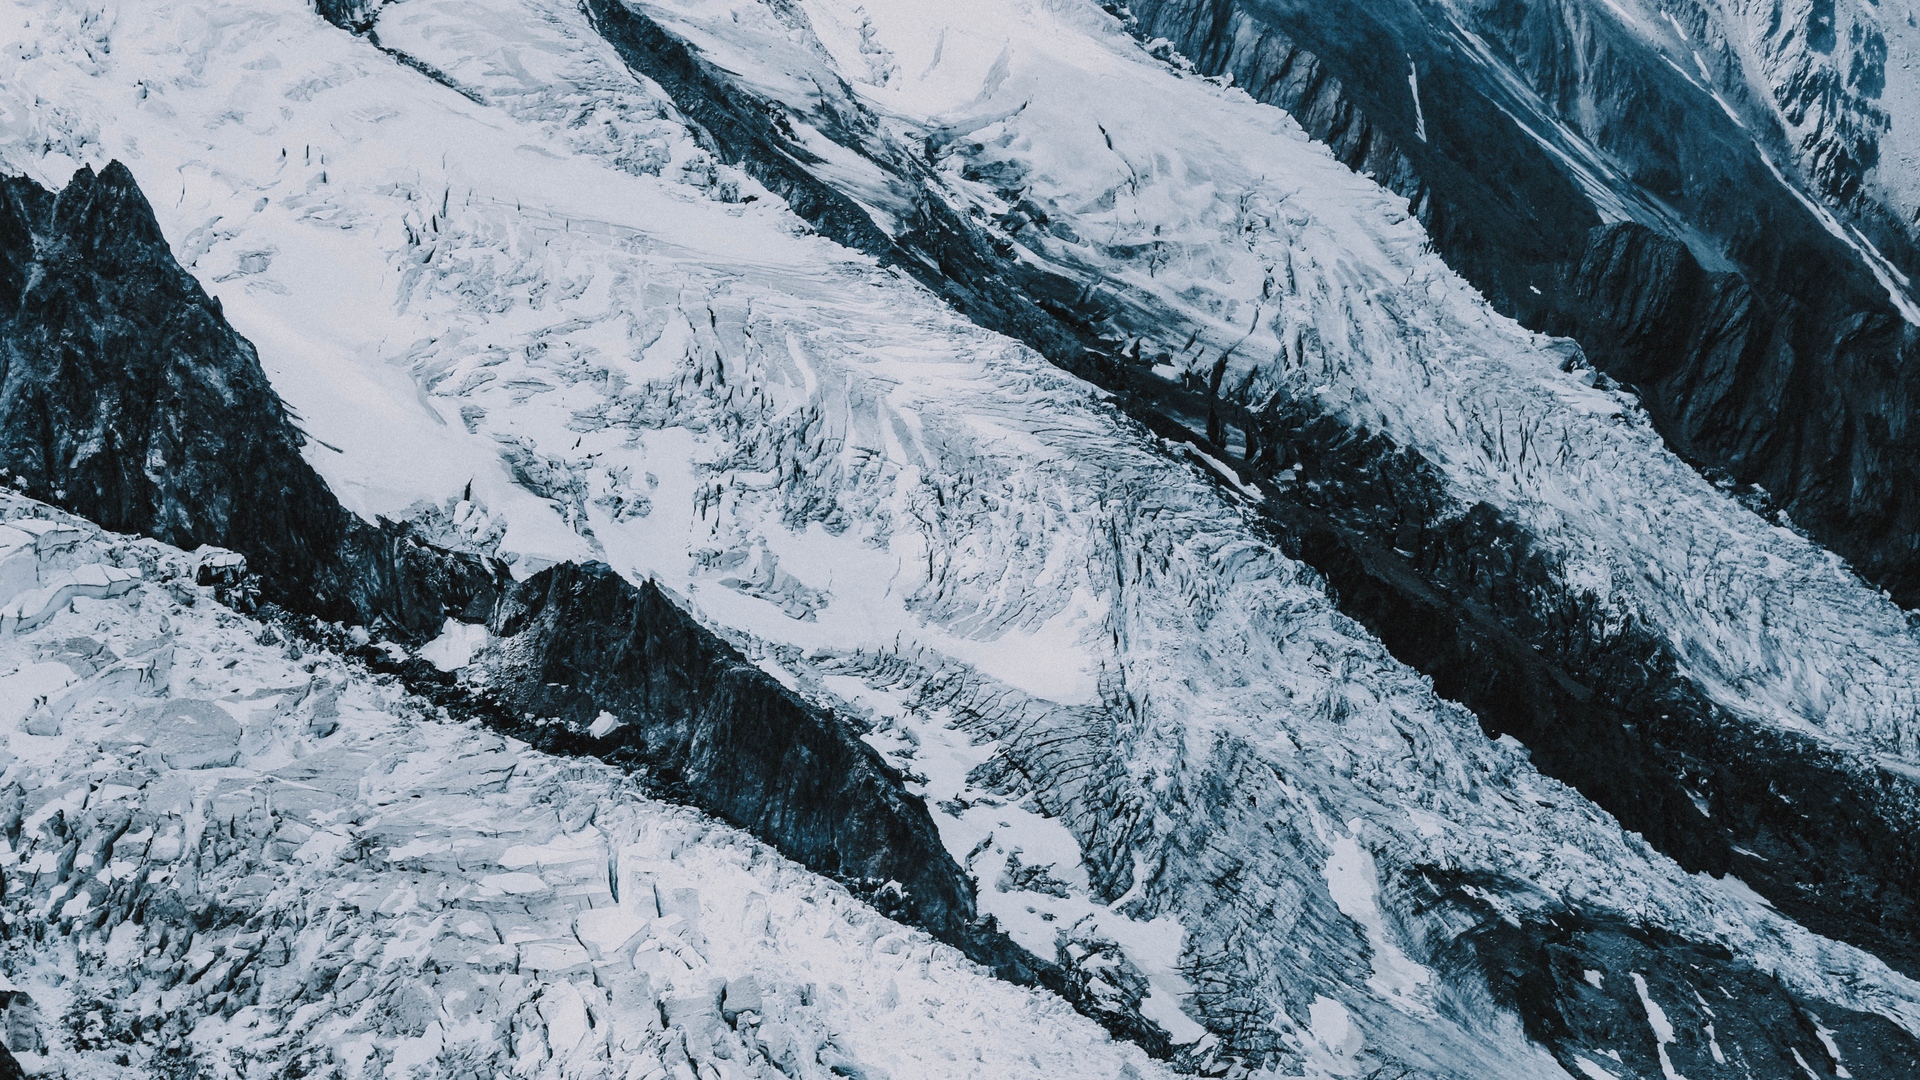 General 1920x1080 mountains glacier landscape nature ice